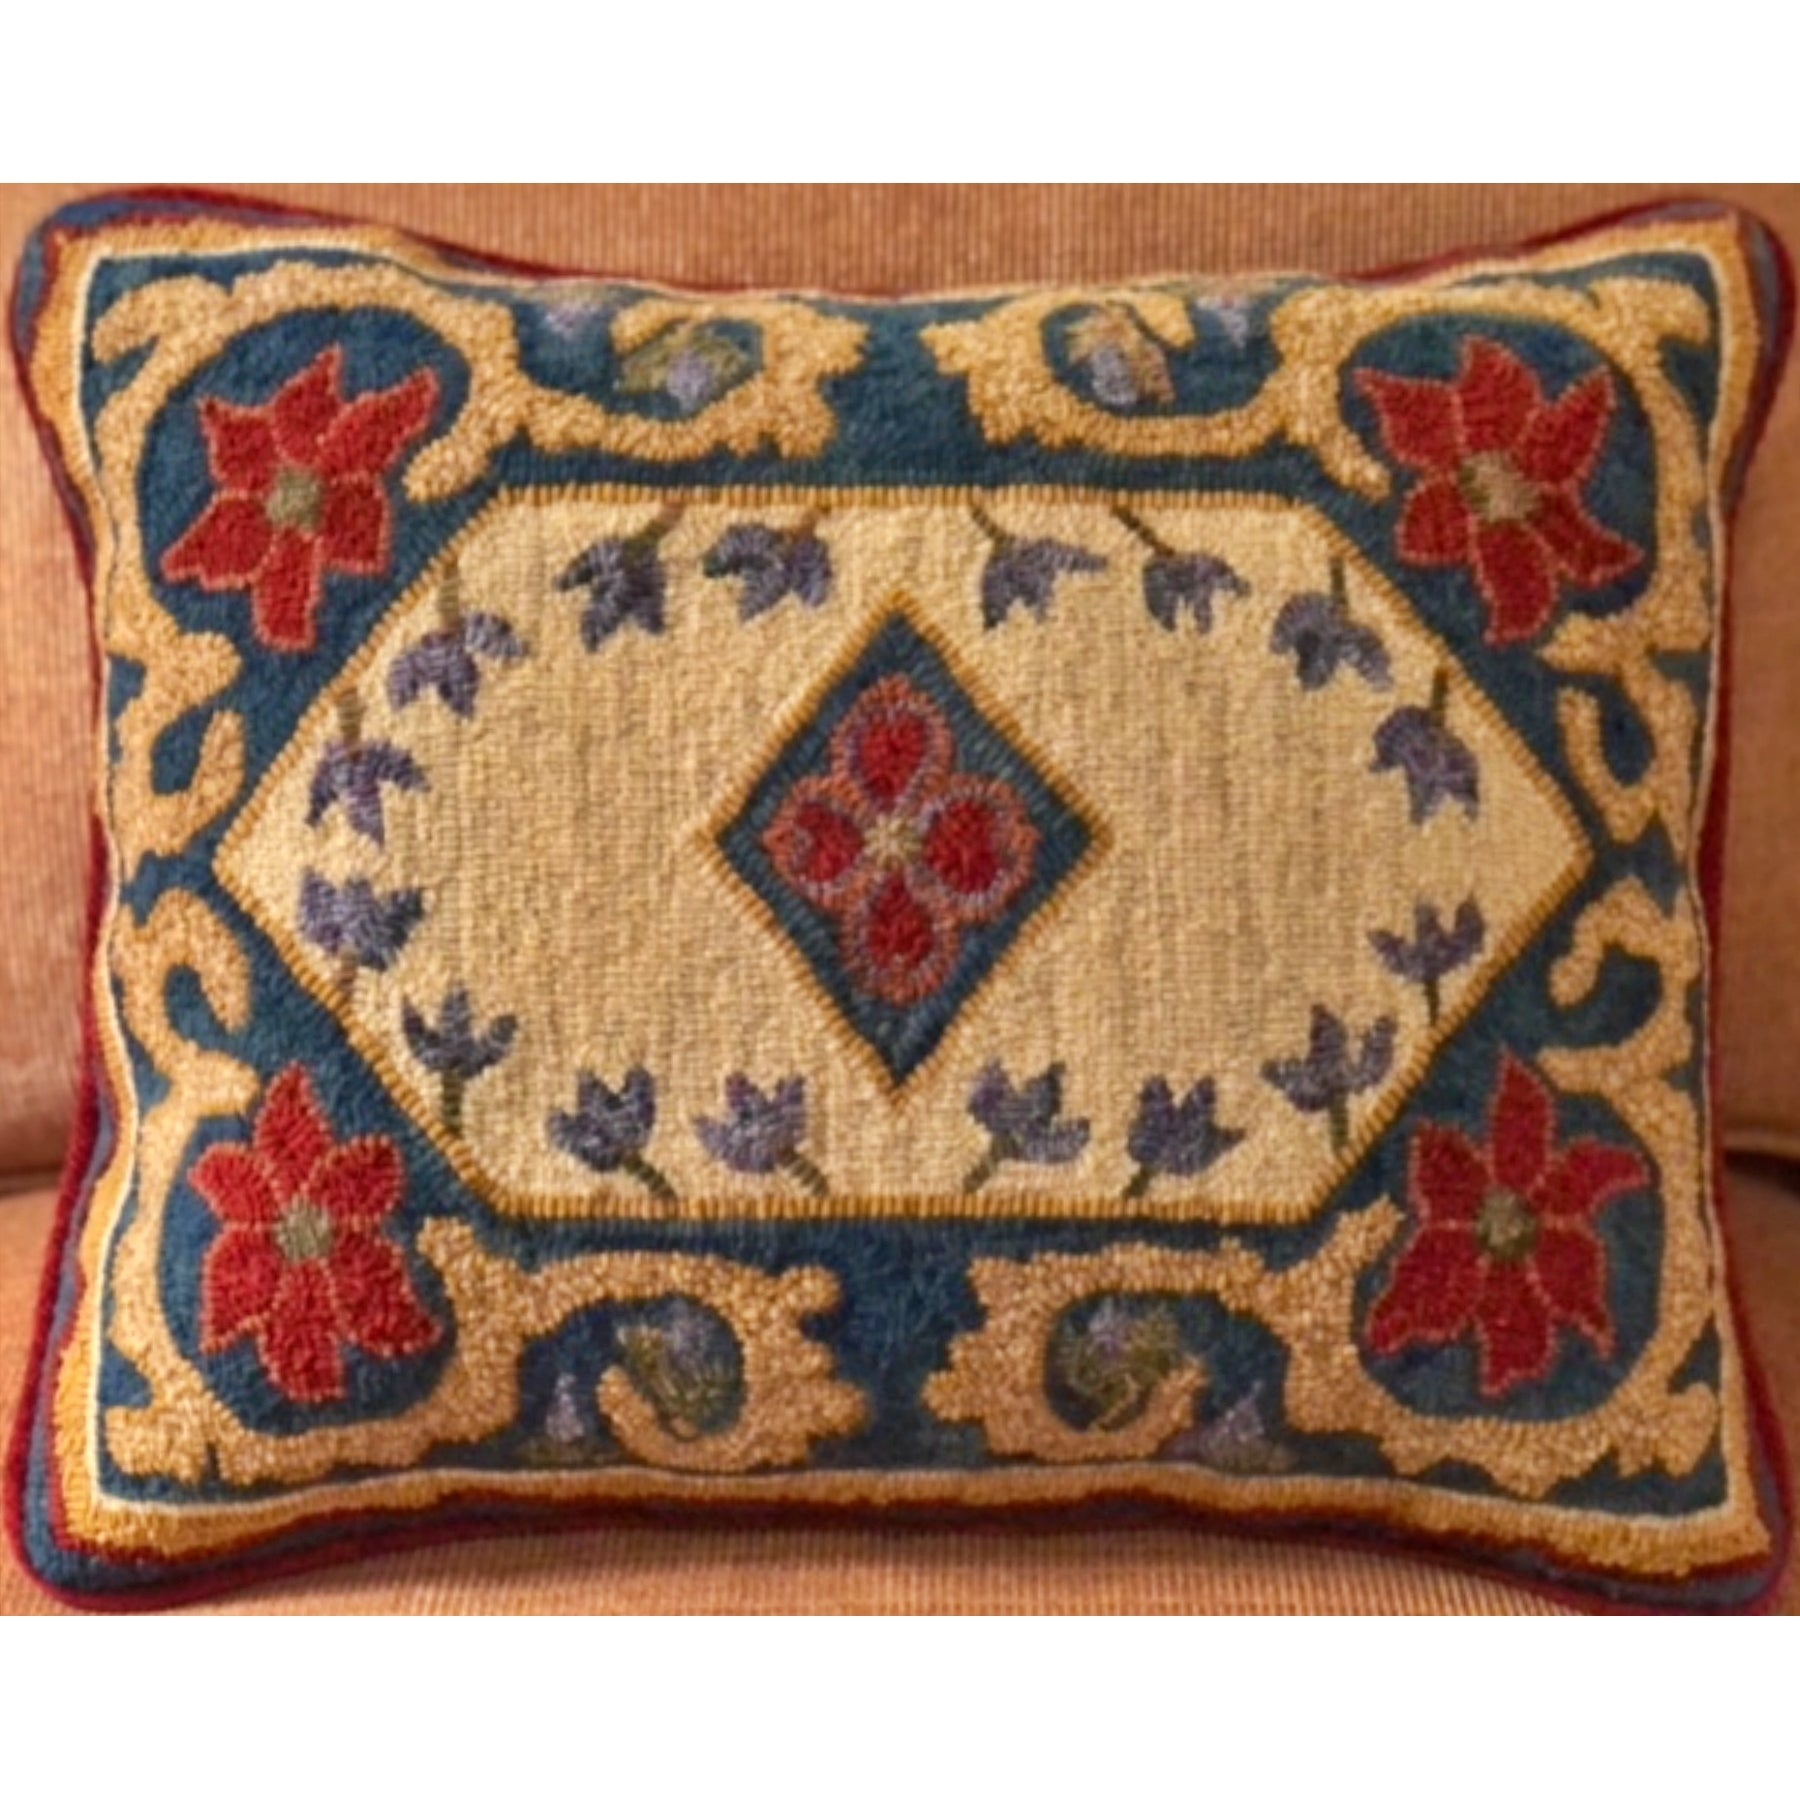 Persian Prayer, rug hooked by Teresa Wallace